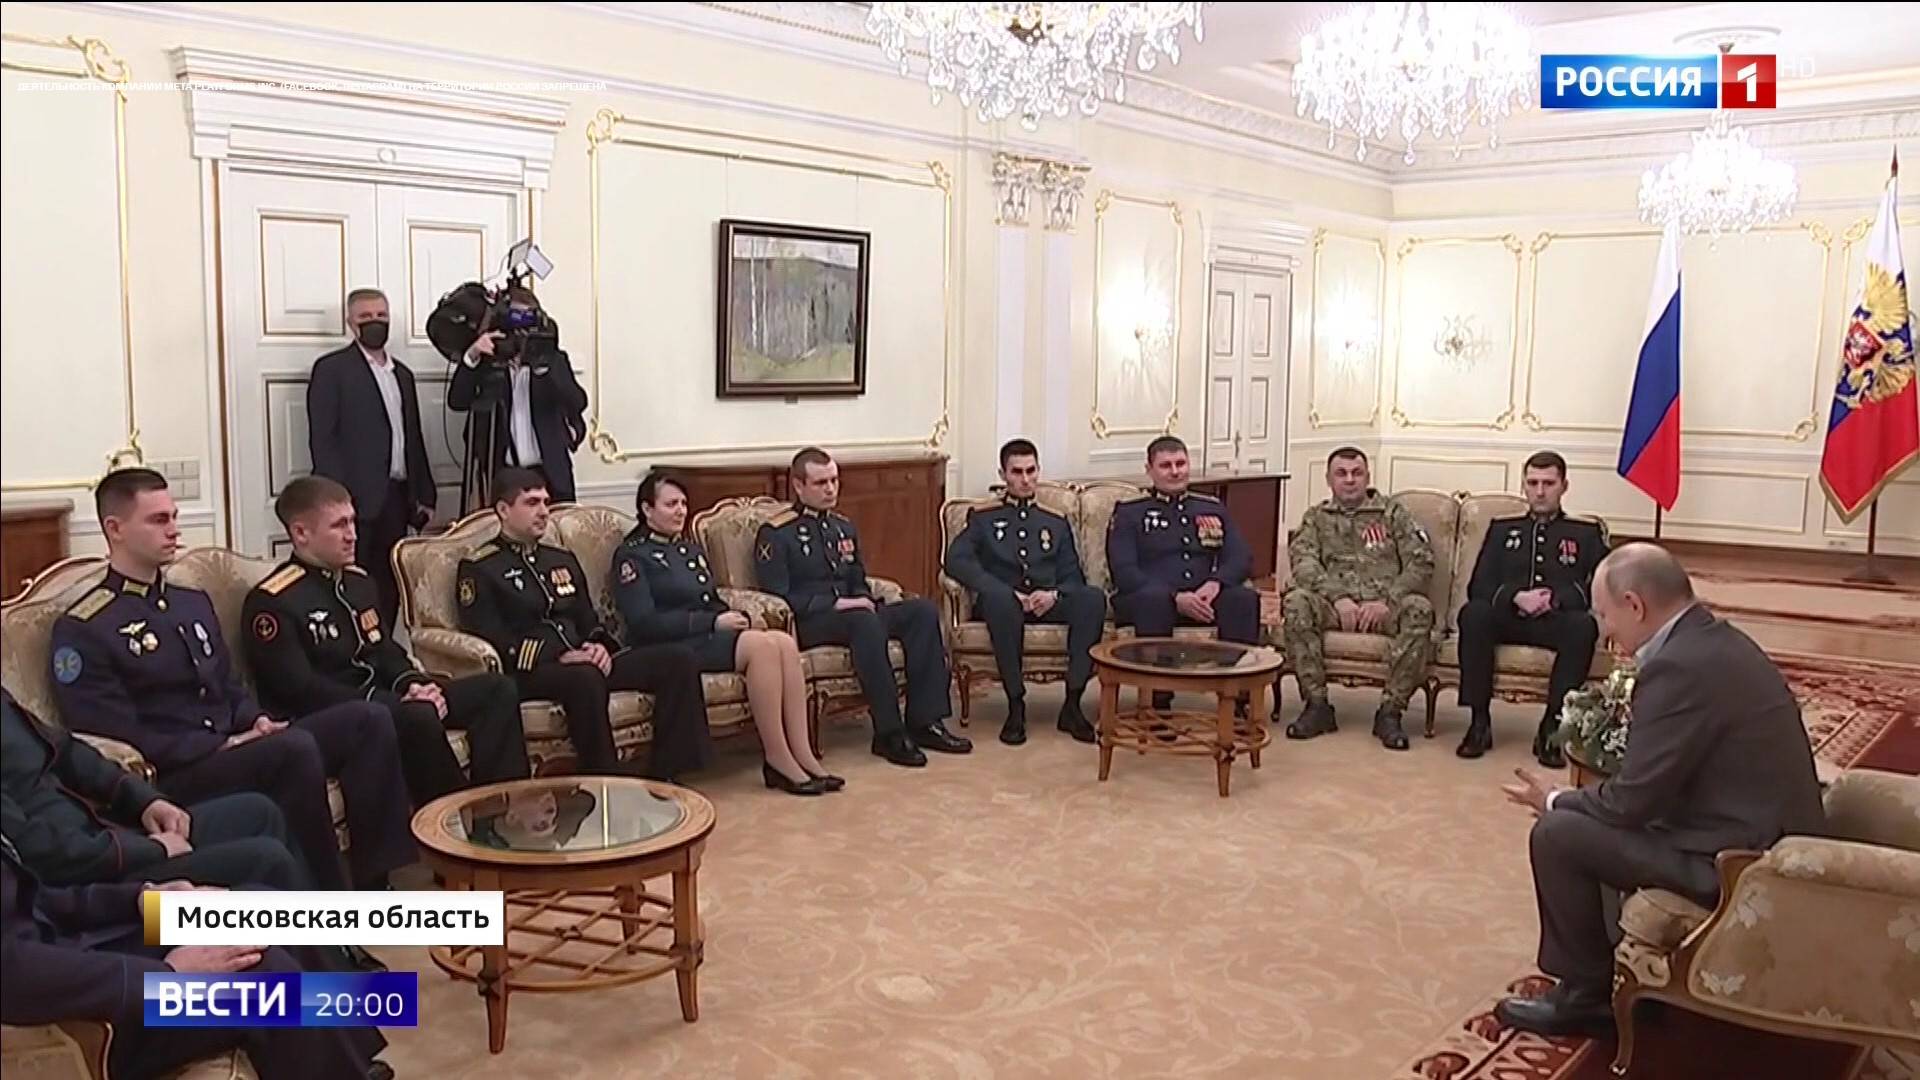 W wielkim salonie wojskowi siedza na fotelach w kregu wokół Putina